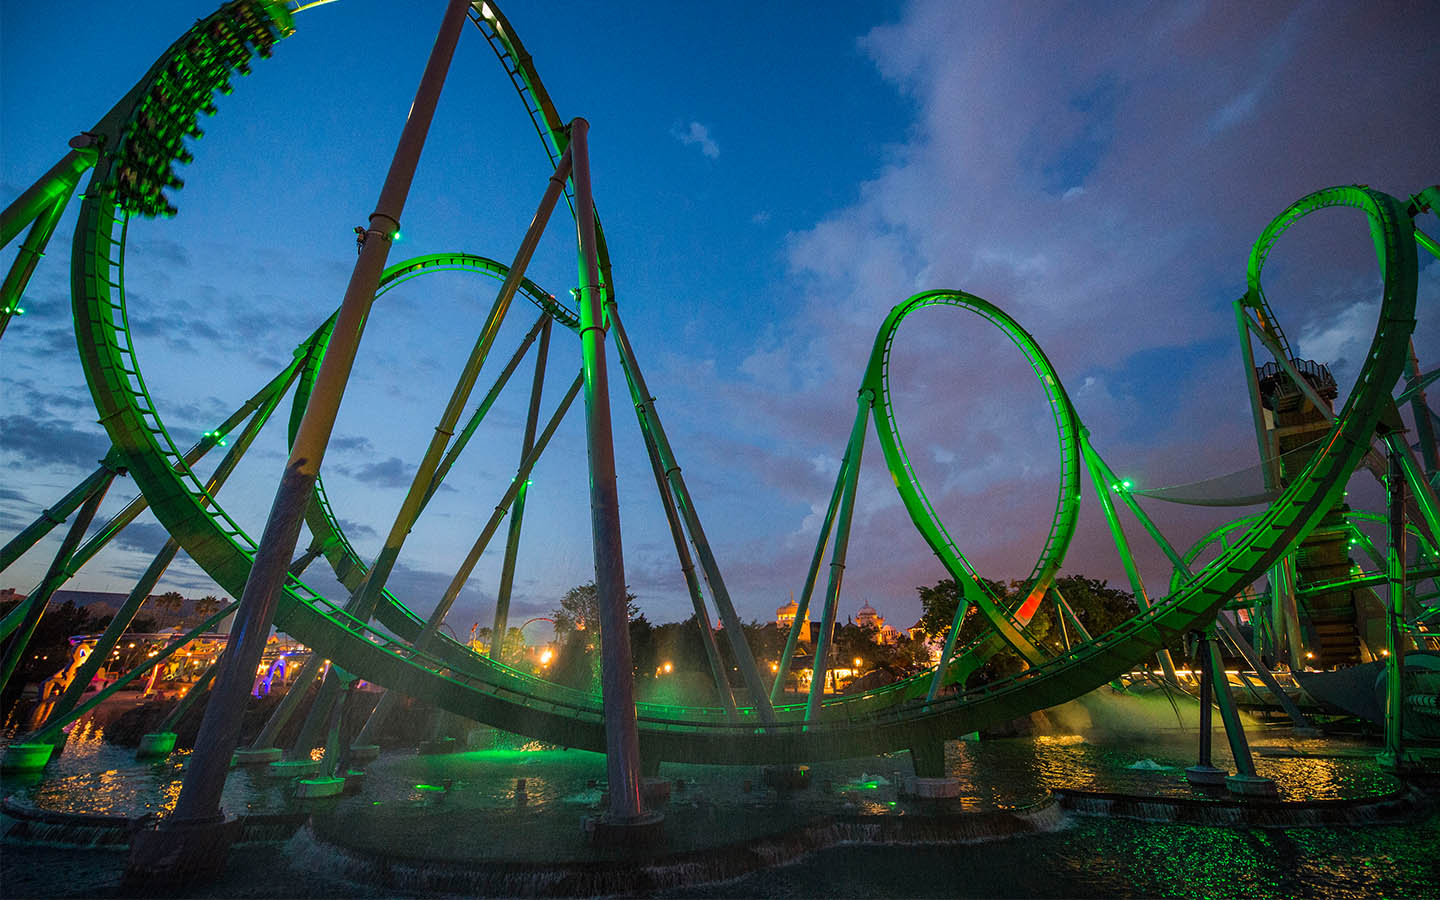 Incredible Hulk Coaster hauling at night